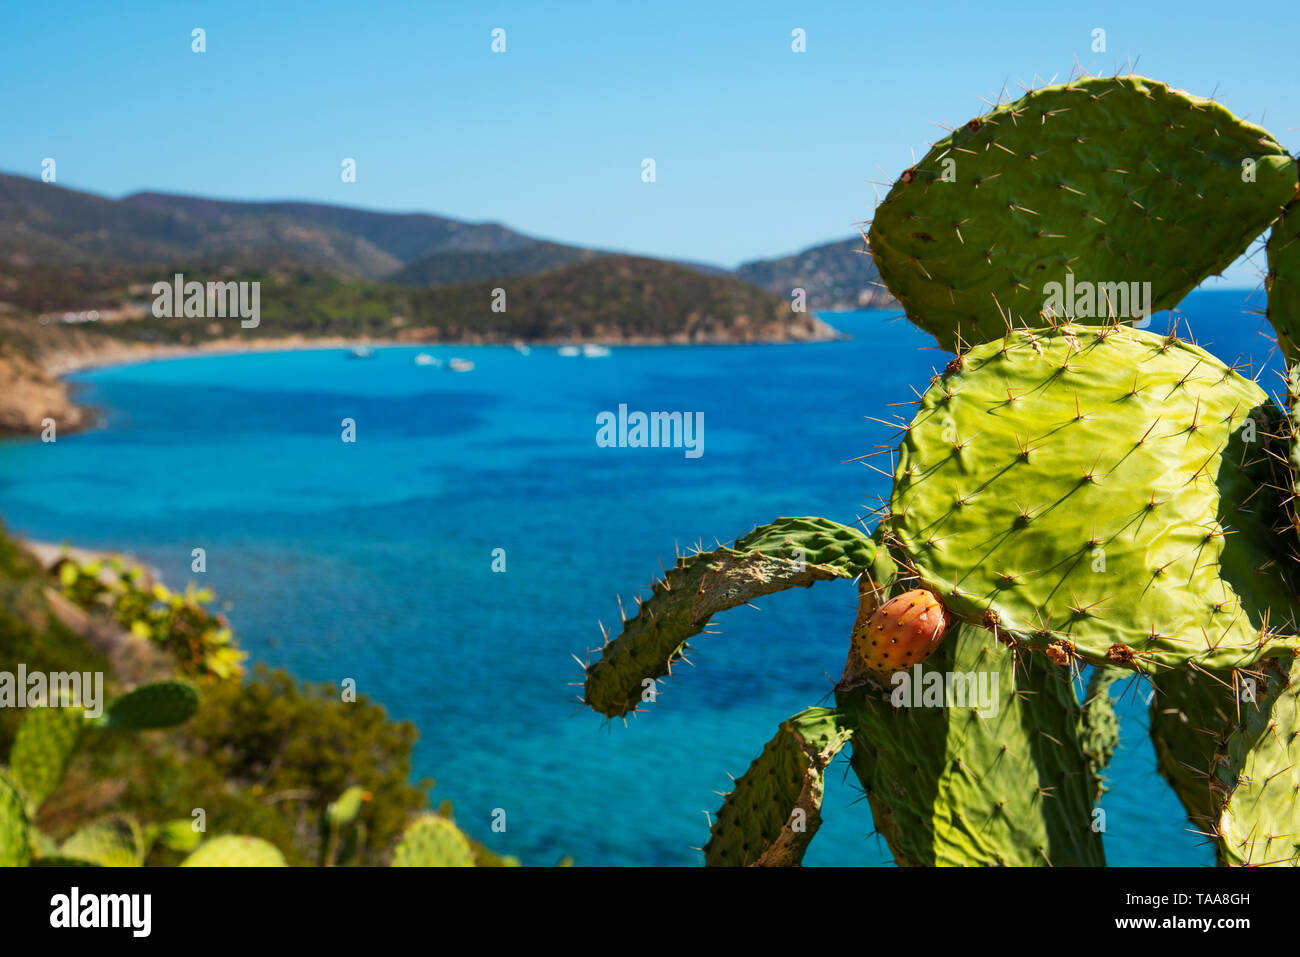 Einen Panoramablick über die Spiaggia di Mari Pintau Strand und das Mittelmeer in Sardinien, Italien, mit einem feigenkakteen im Vordergrund. Stockfoto